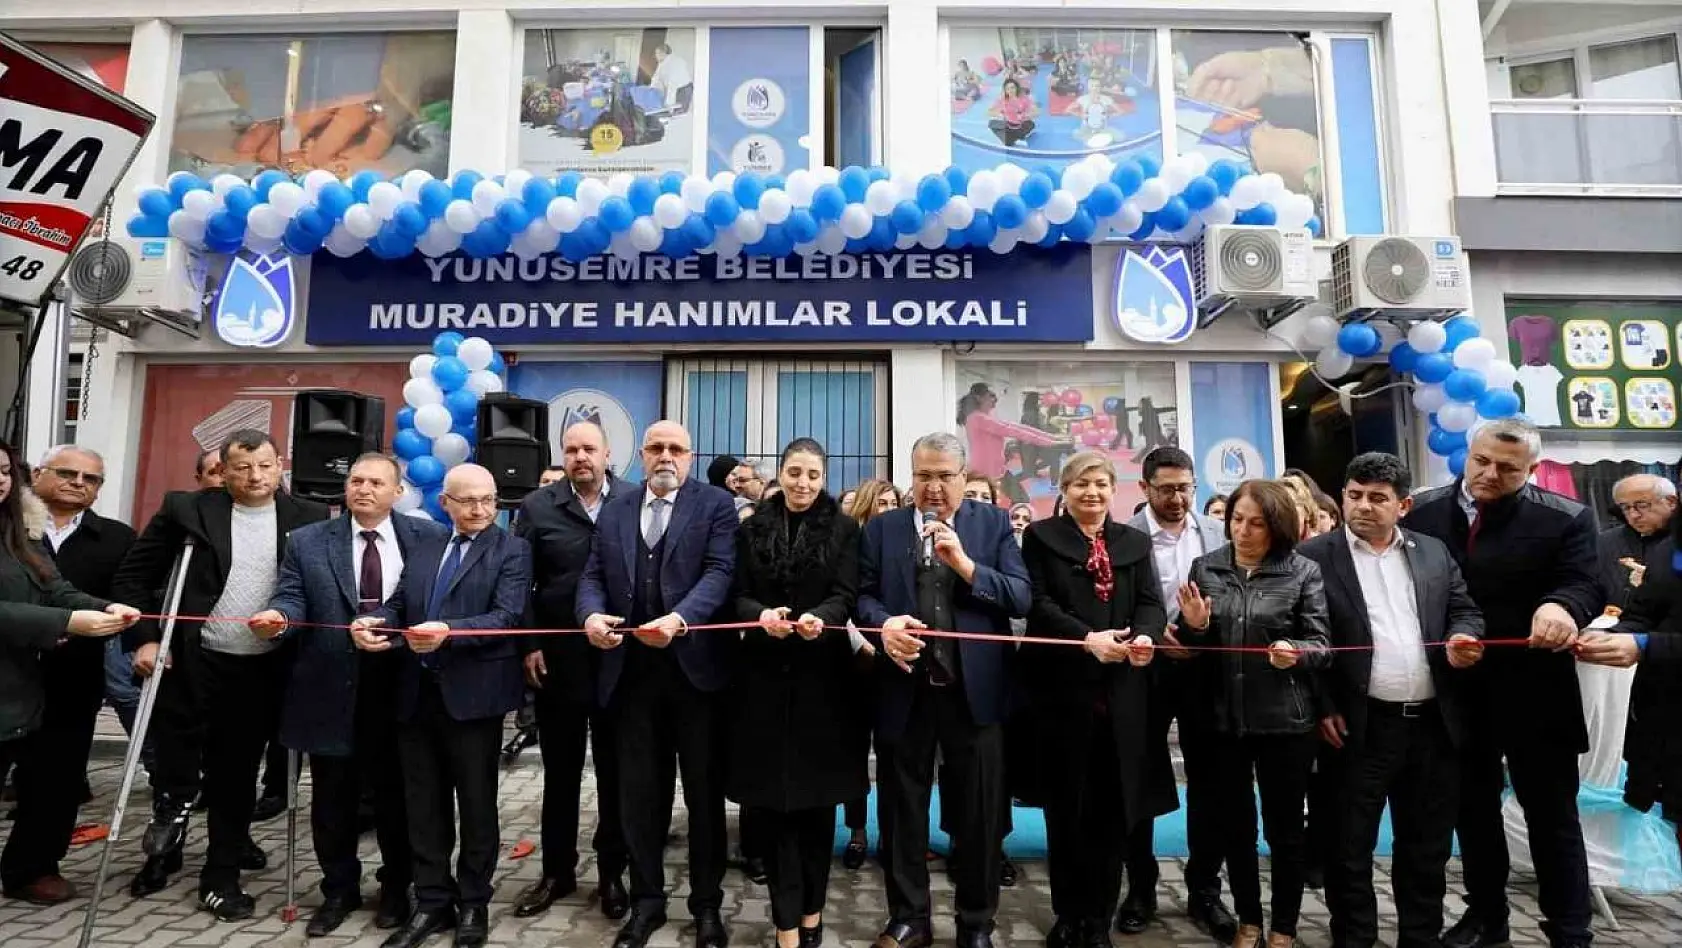 Muradiye'ye yeni hanımlar lokali açıldı